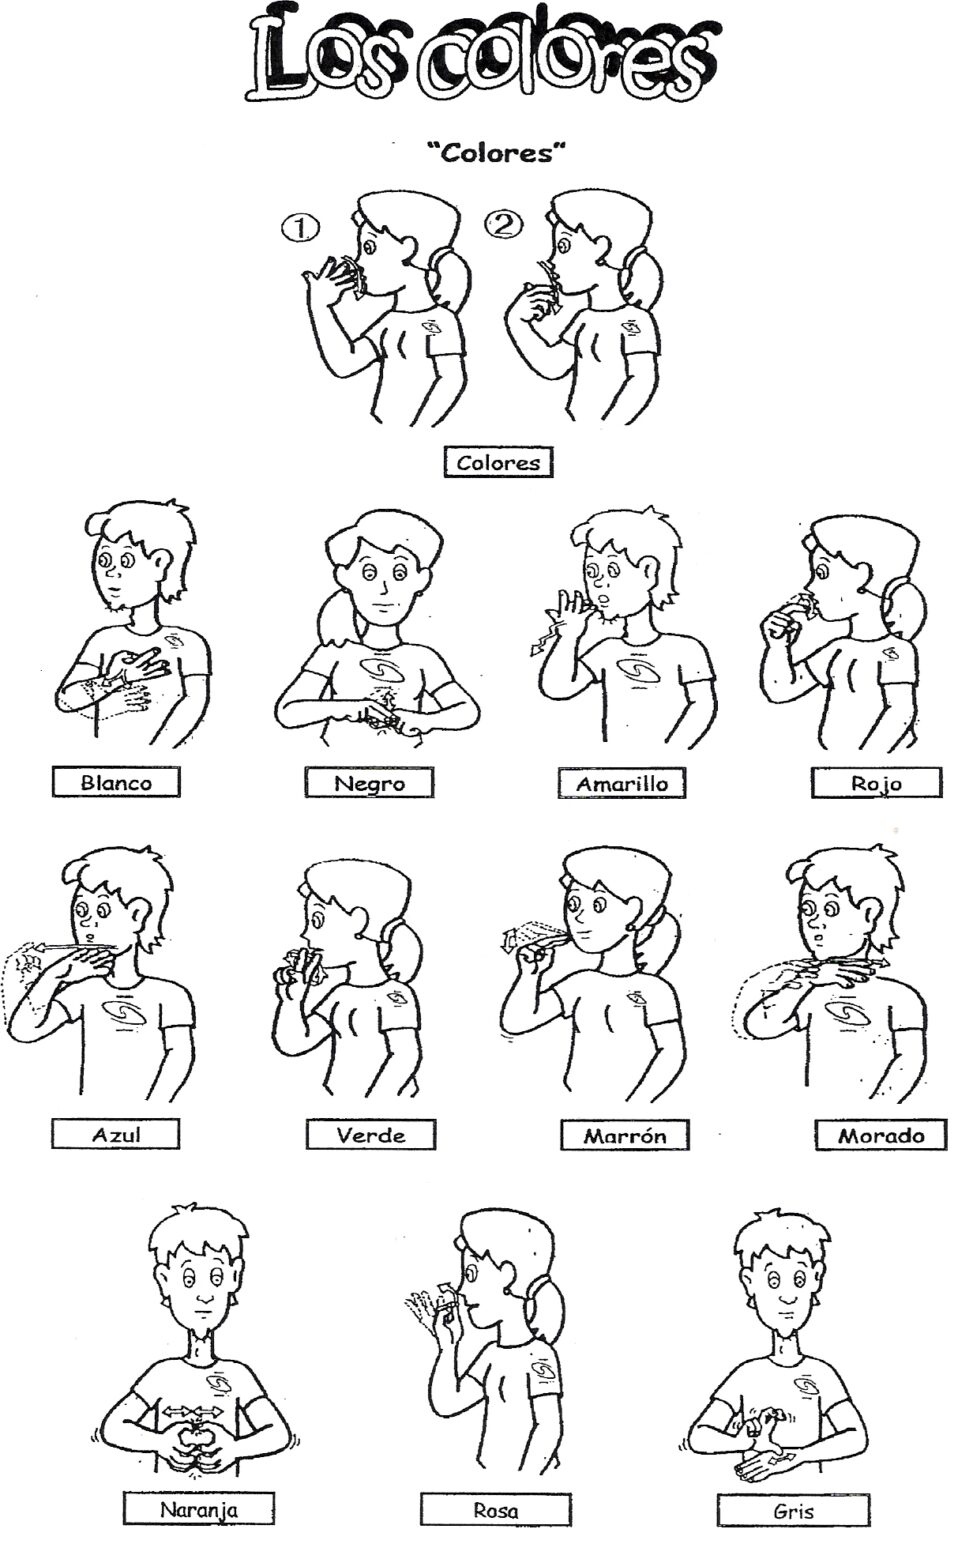 Colores en Lengua de Signos (dibujos) - Aprende Lengua de Signos ...